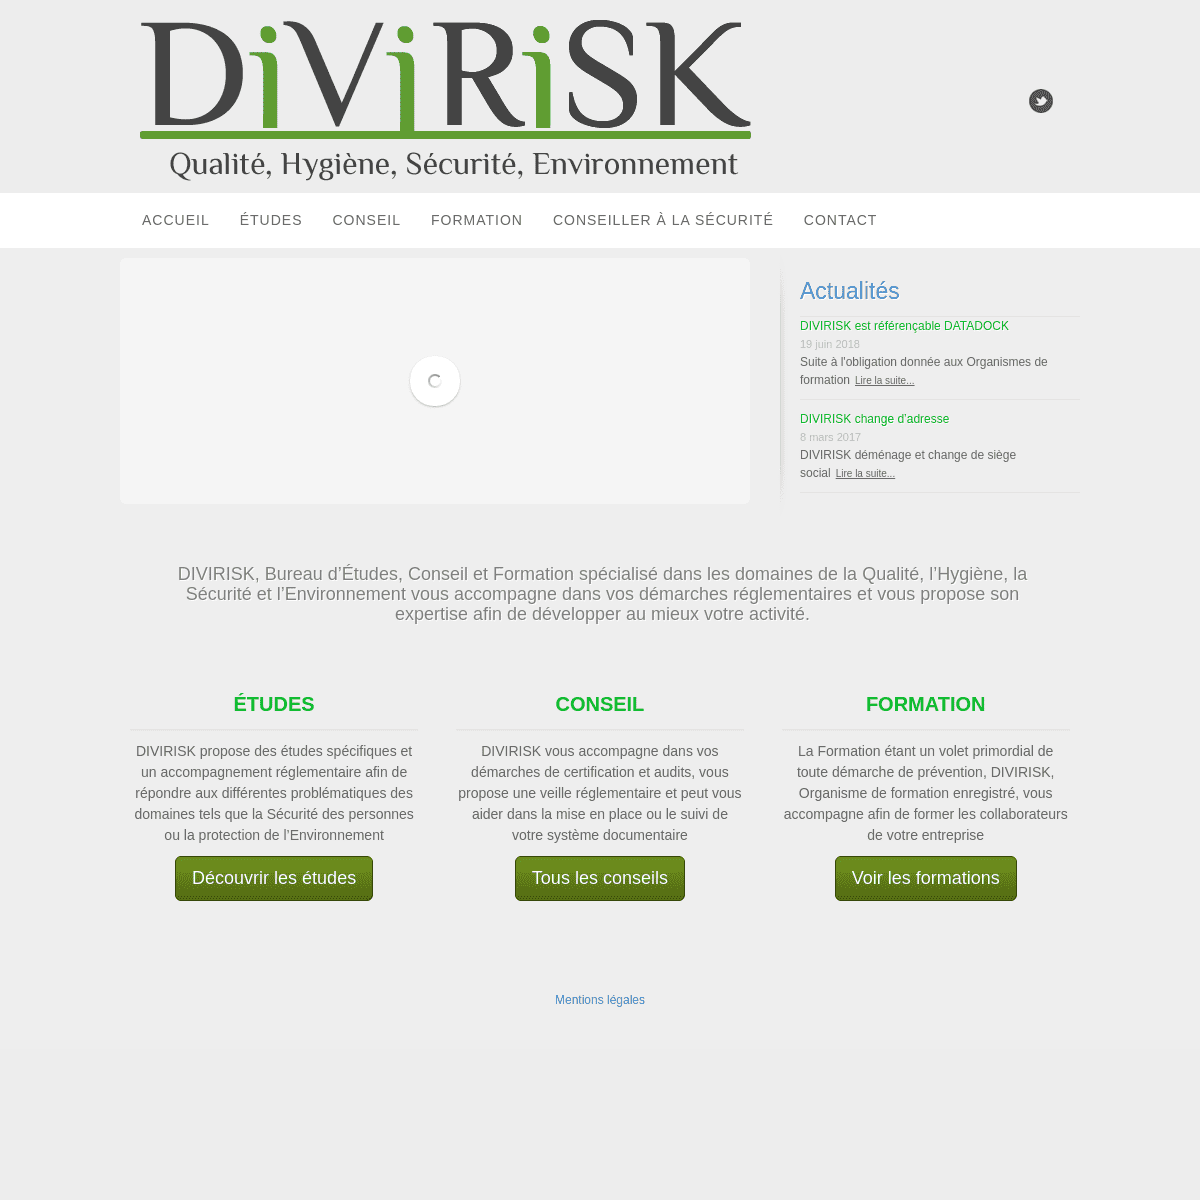 A complete backup of https://divirisk.fr